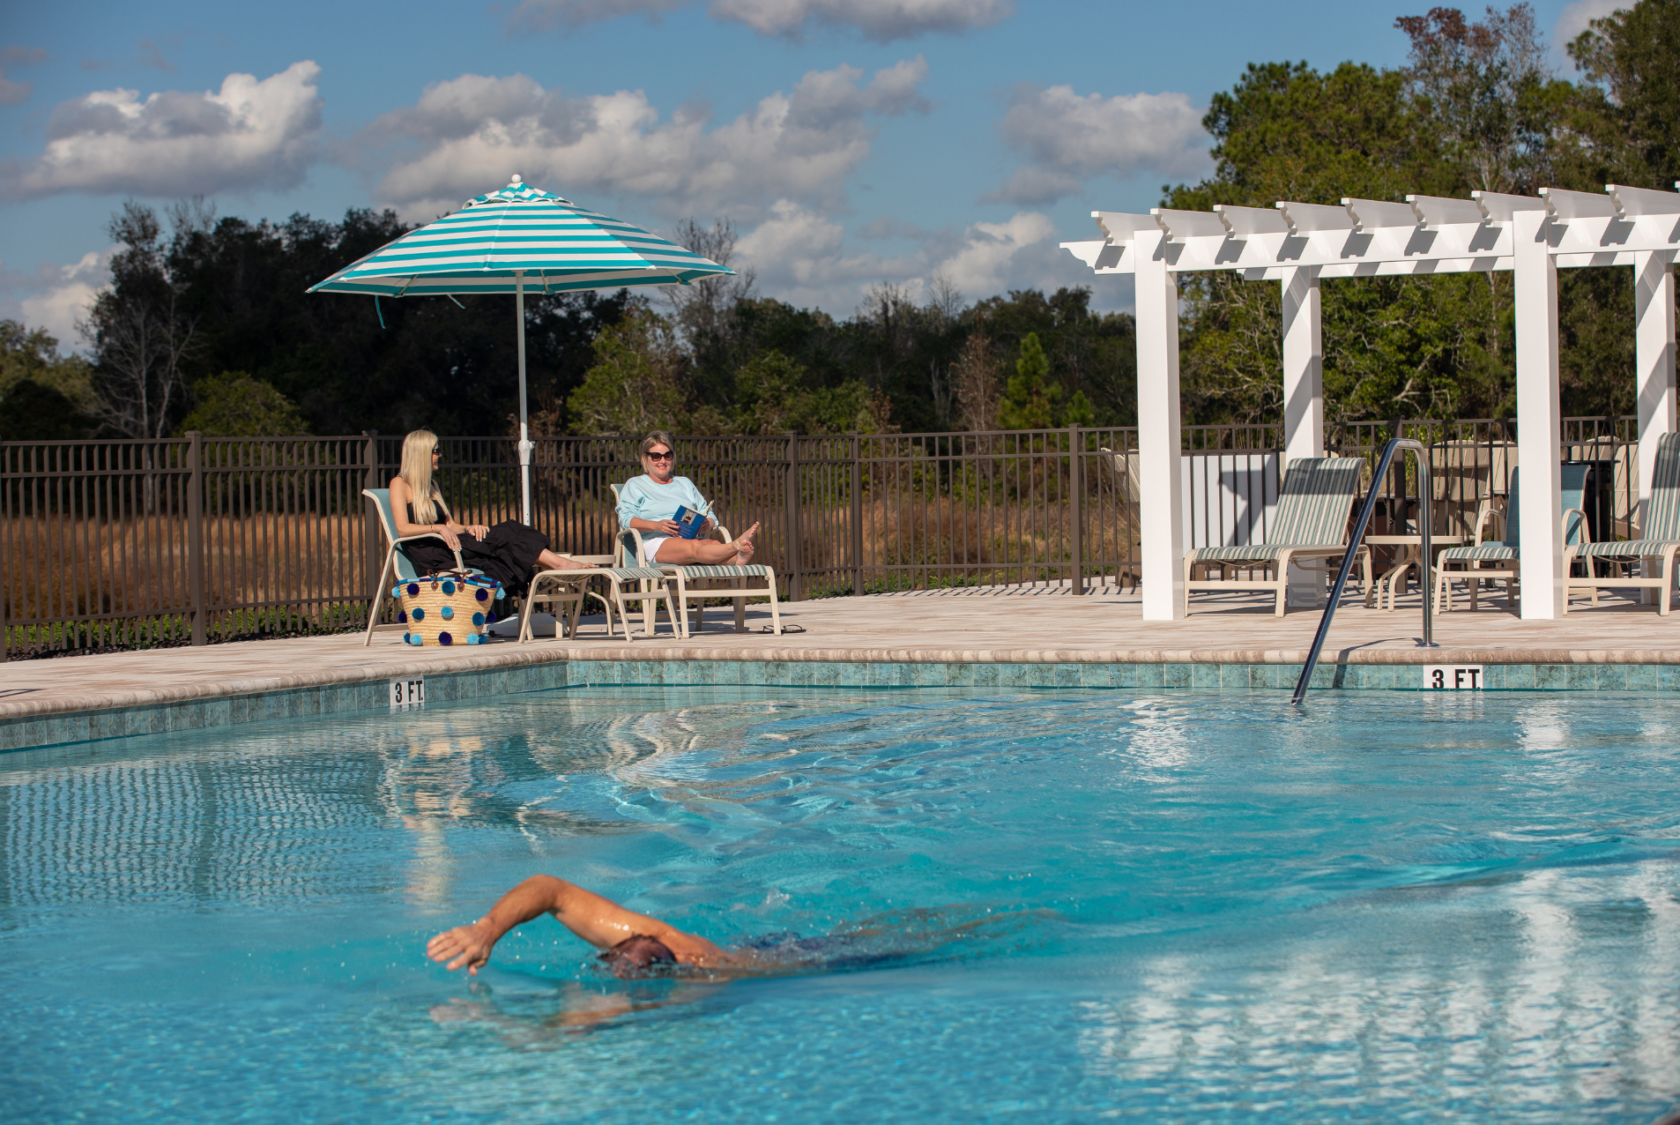 Residents enjoying the community pool at Lakeshore.